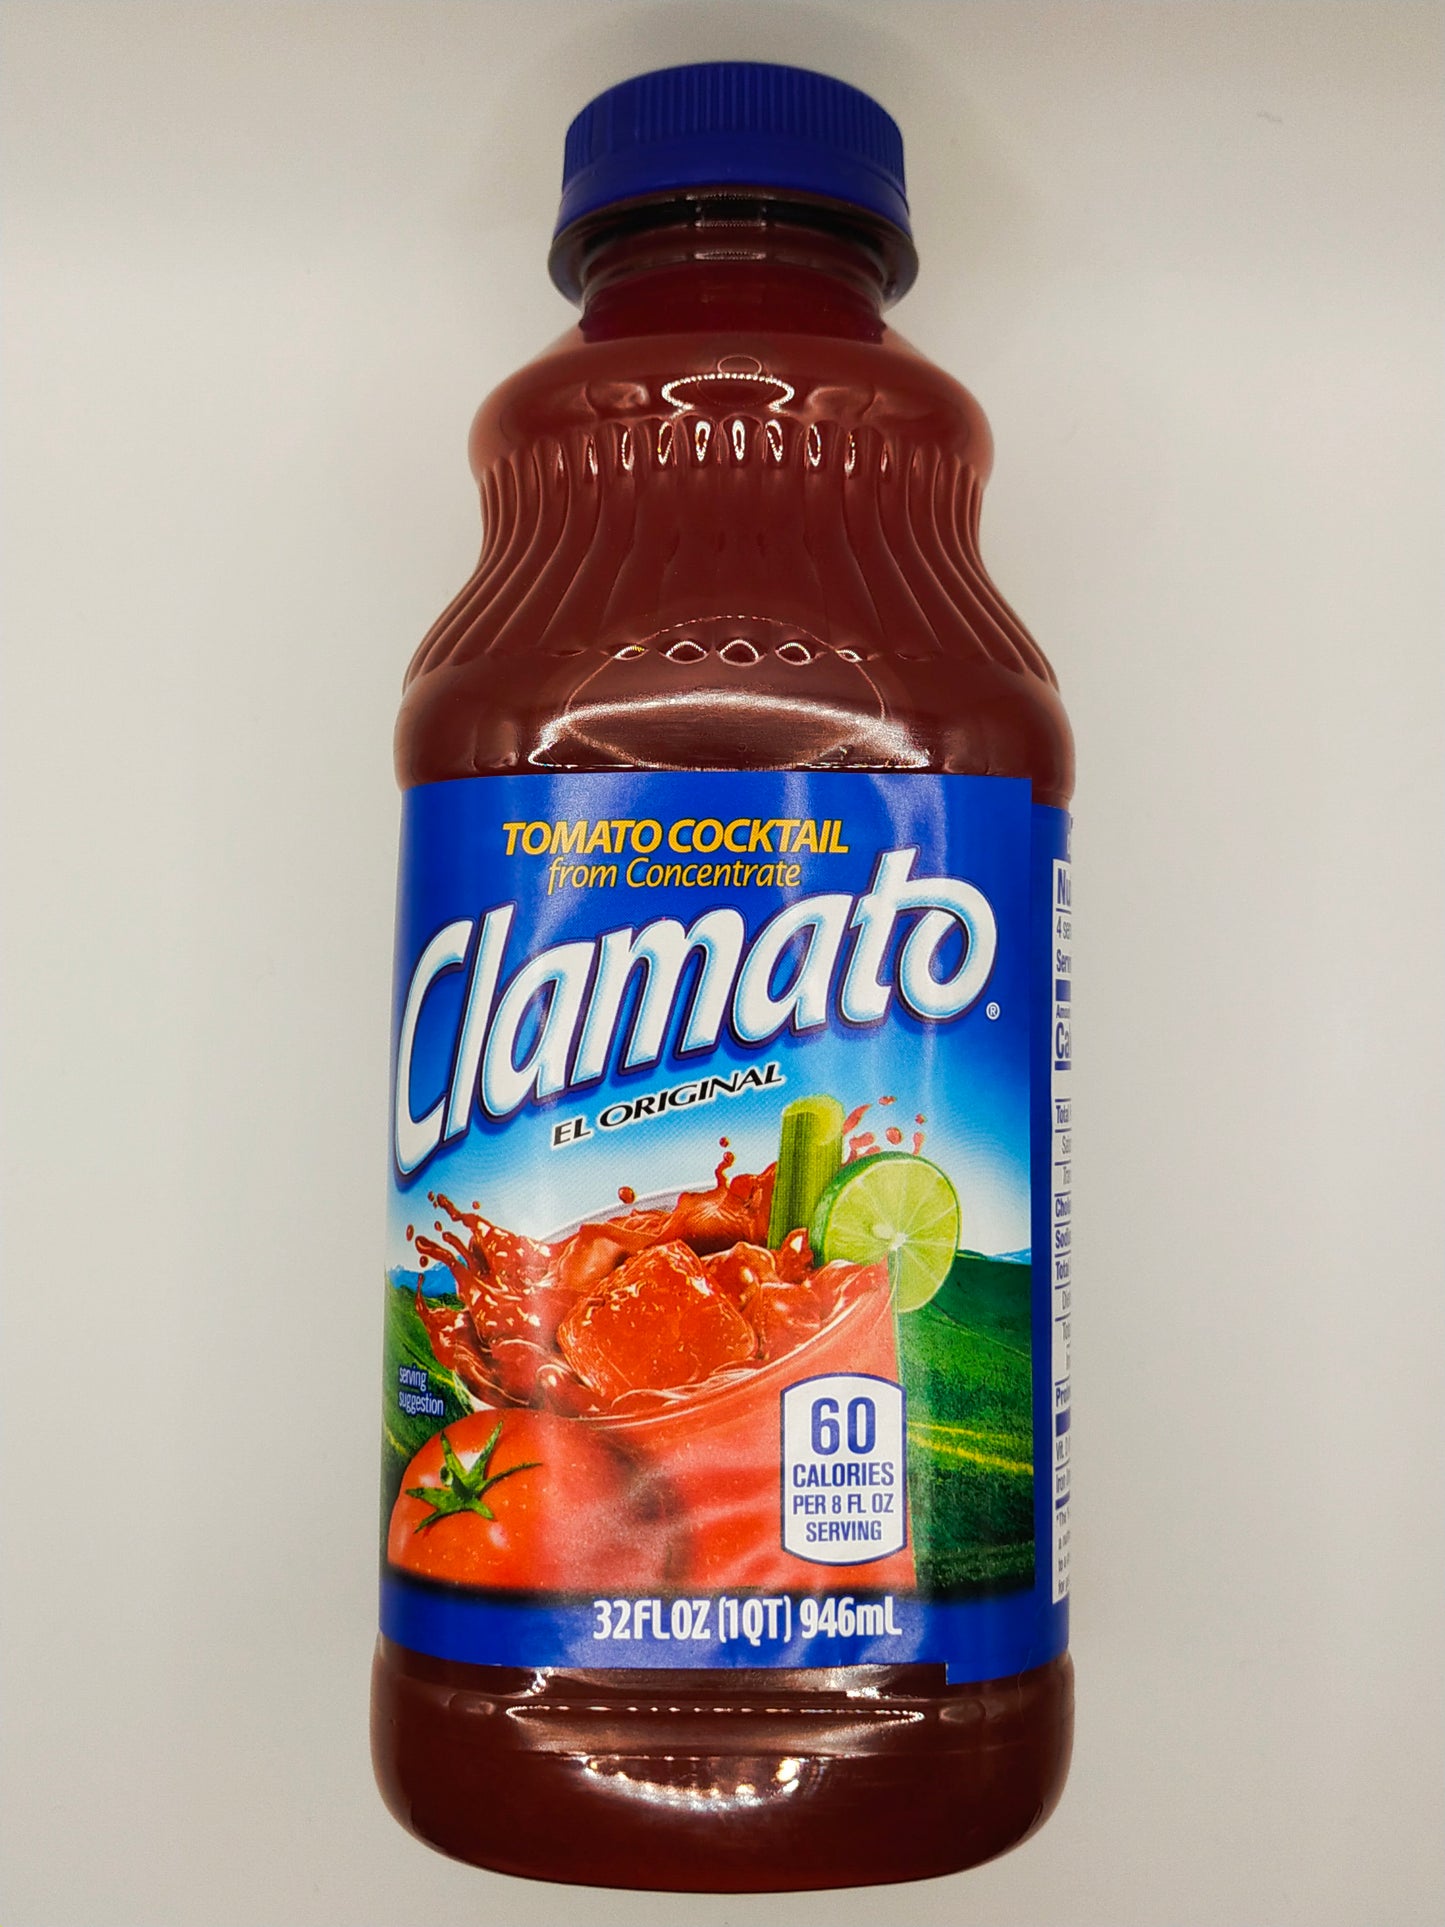 Clamato - Original Tomato Cocktail